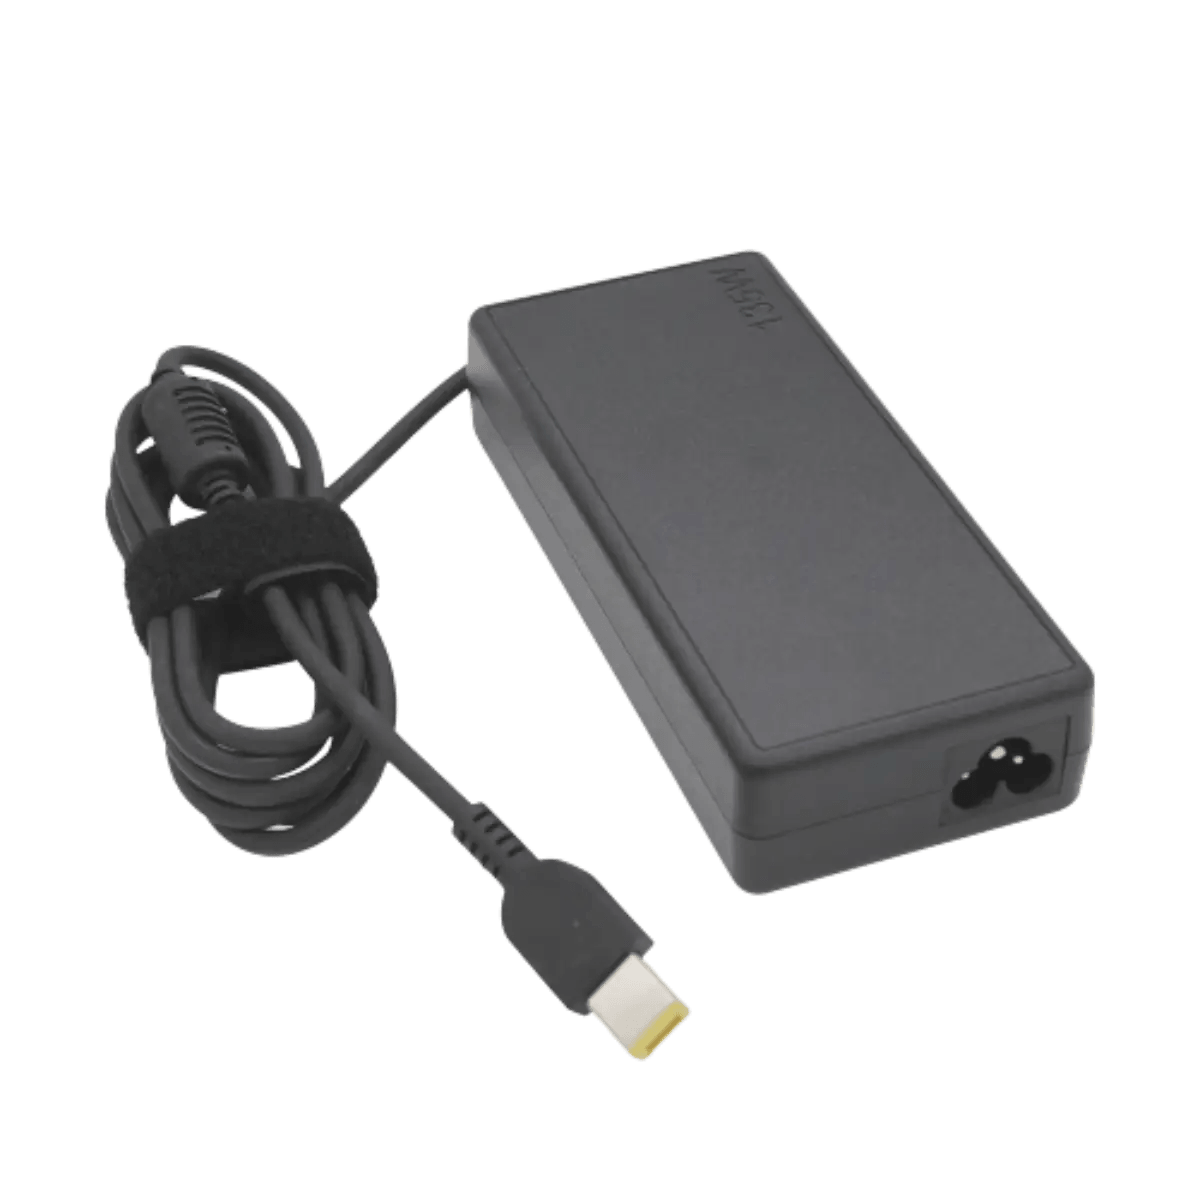 Chargeur Lenovo IdeaPad N580 ordinateur portable - France Chargeur